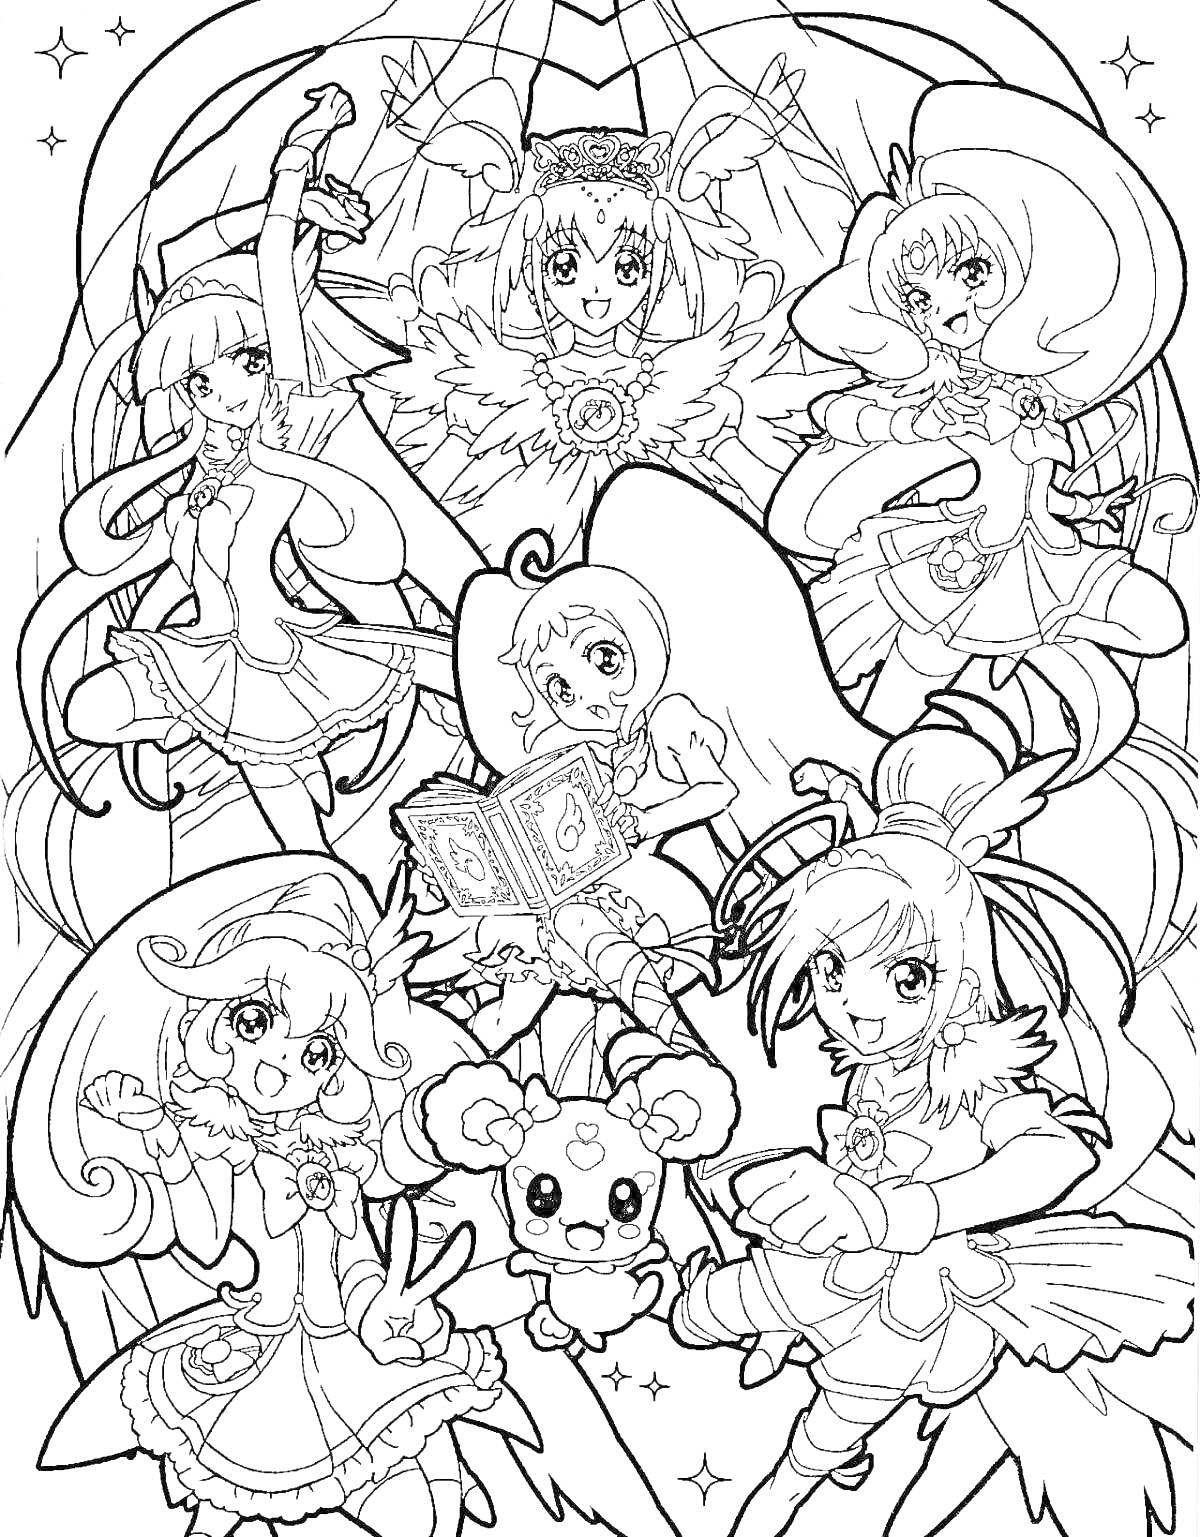 Раскраска Групповая раскраска по серийному аниме о волшебных девочках Precure с шестью персонажами и маленьким магическим существом